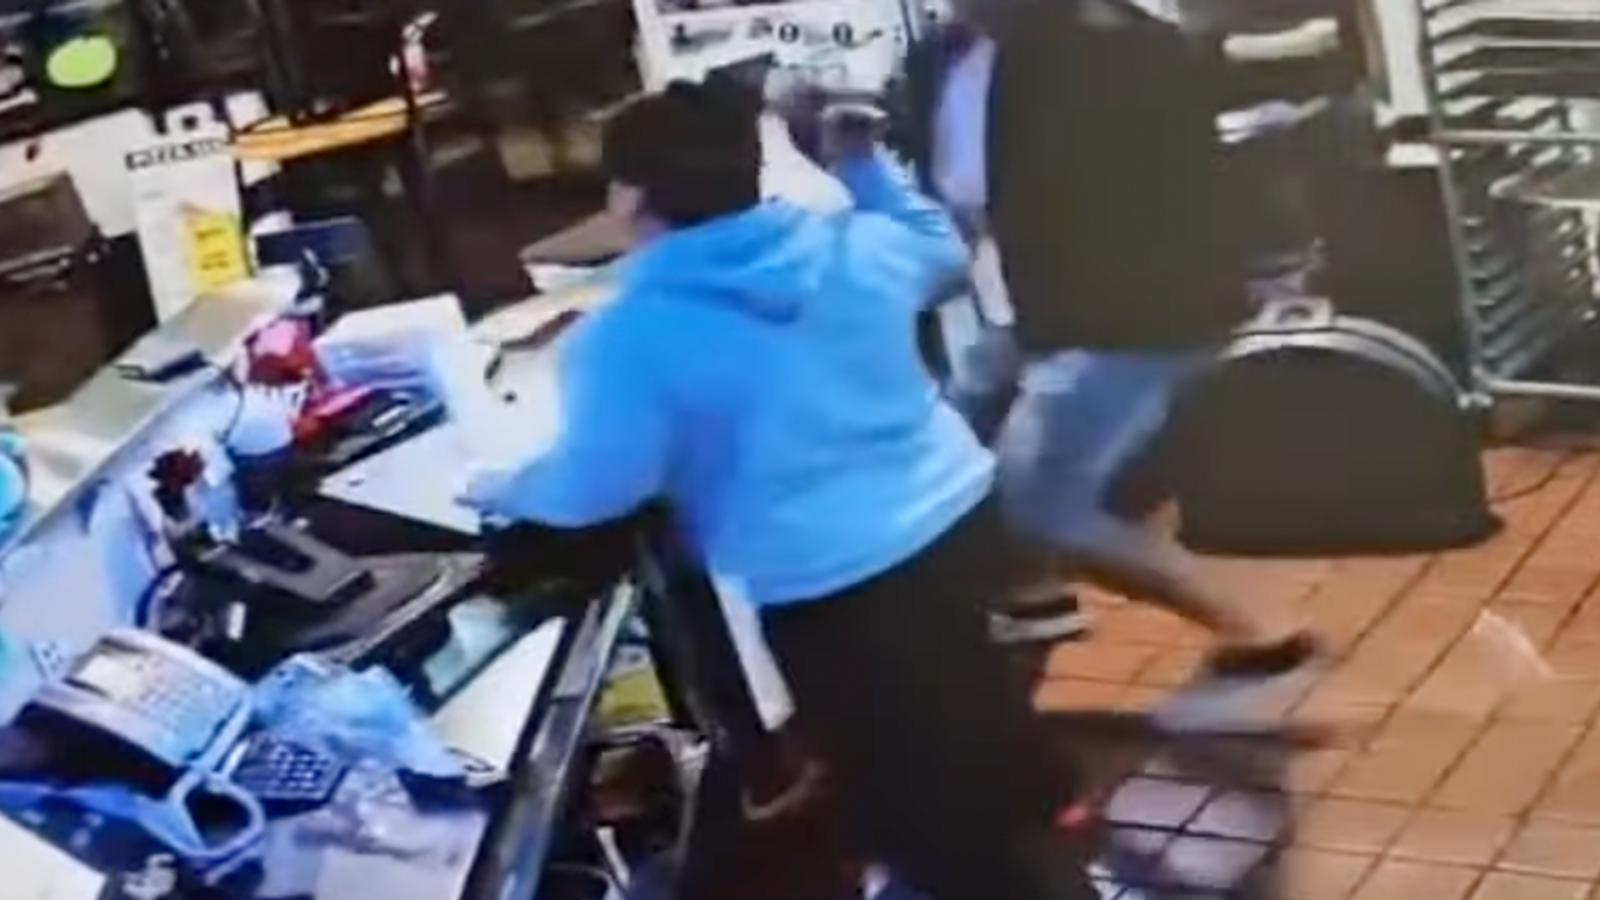 Des employés d'une pizzeria font fuir un voleur à coups de marteau et de poubelle